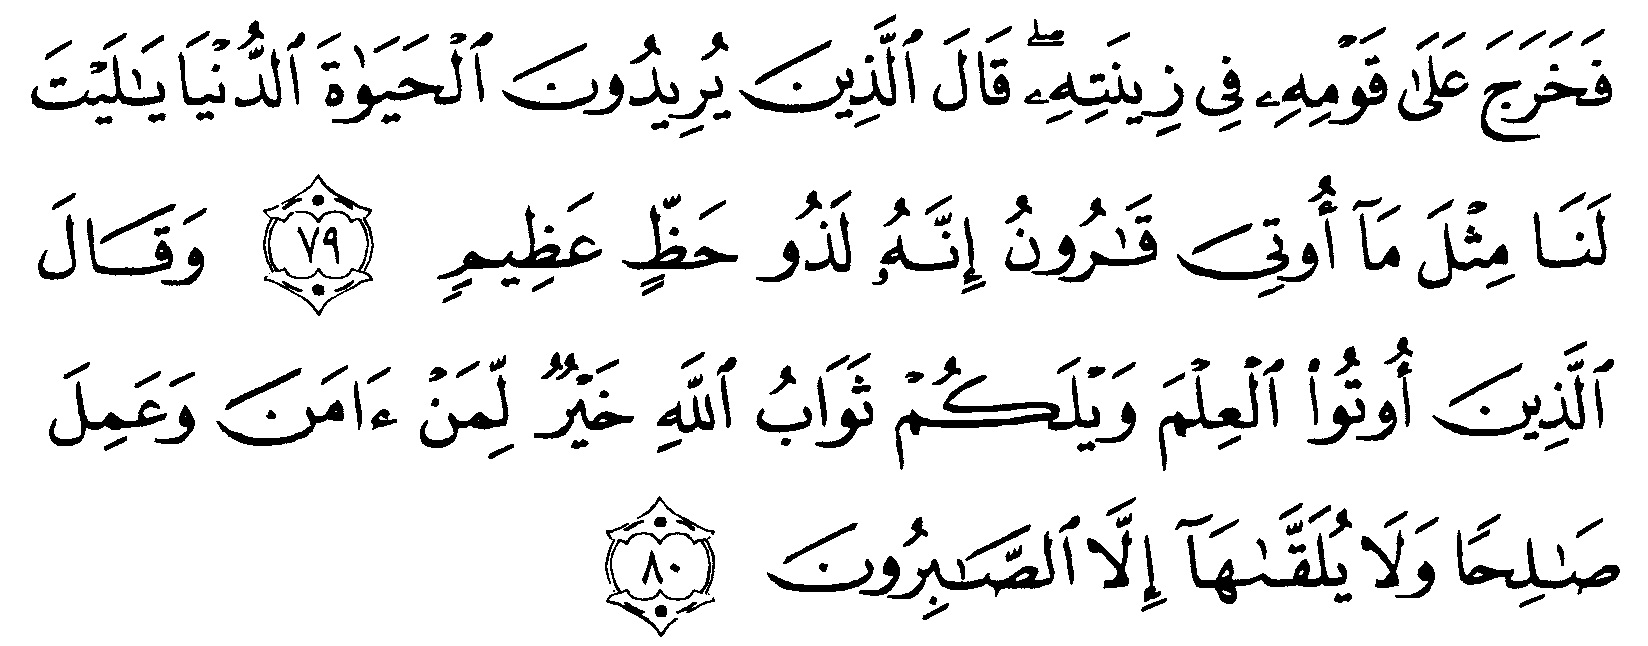 Tafsir Ibnu Katsir Surah Al-Qashash ayat 79-80 (26 